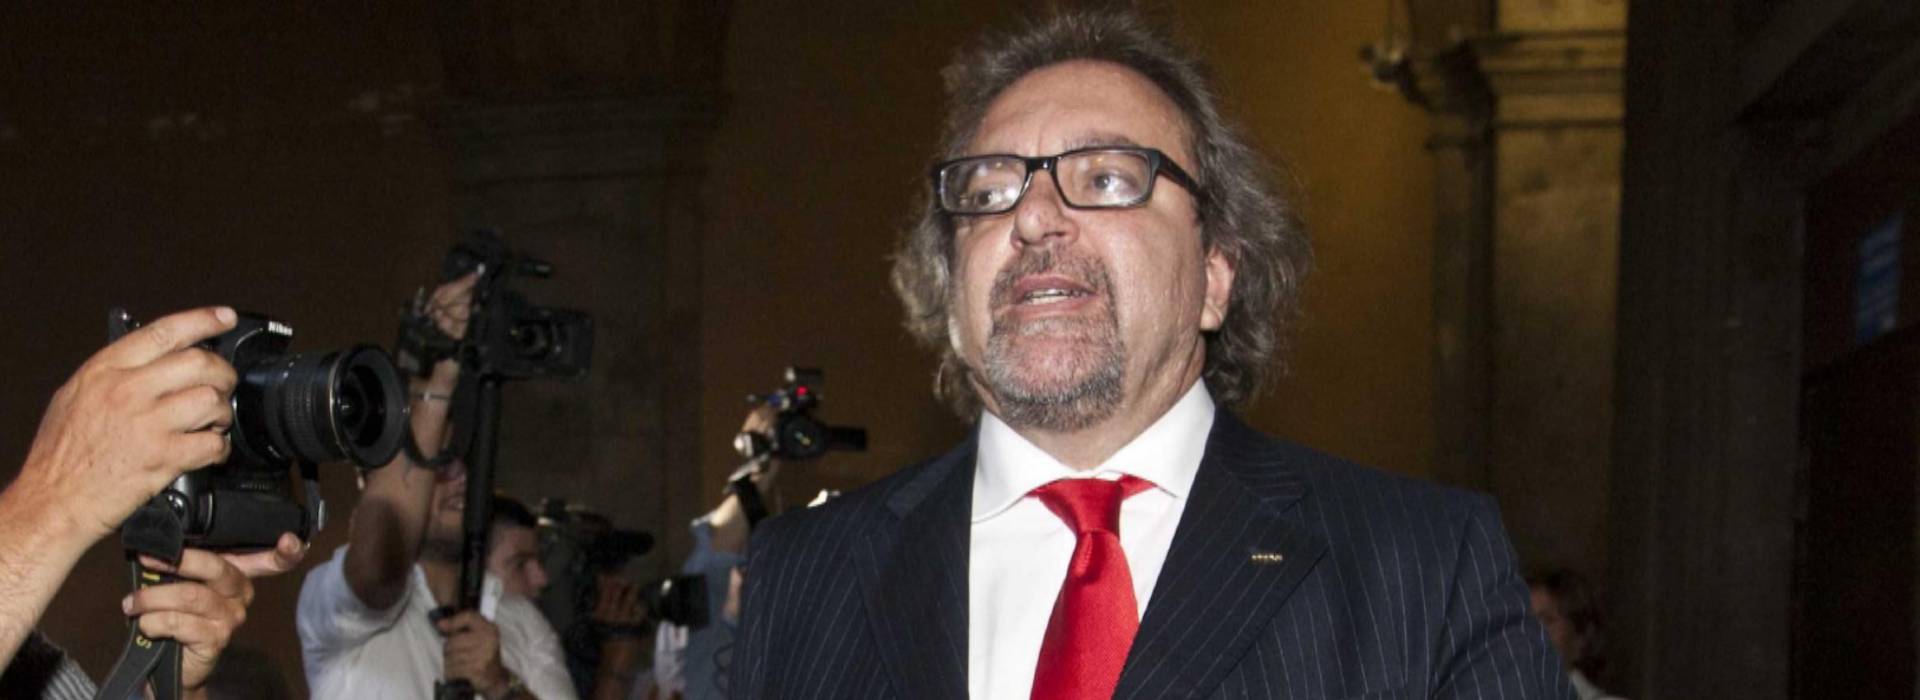 Michele Giarrusso è fuori dal M5S: non ha restituito i soldi sul conto corrente di Patuanelli, D'Uva e Di Maio